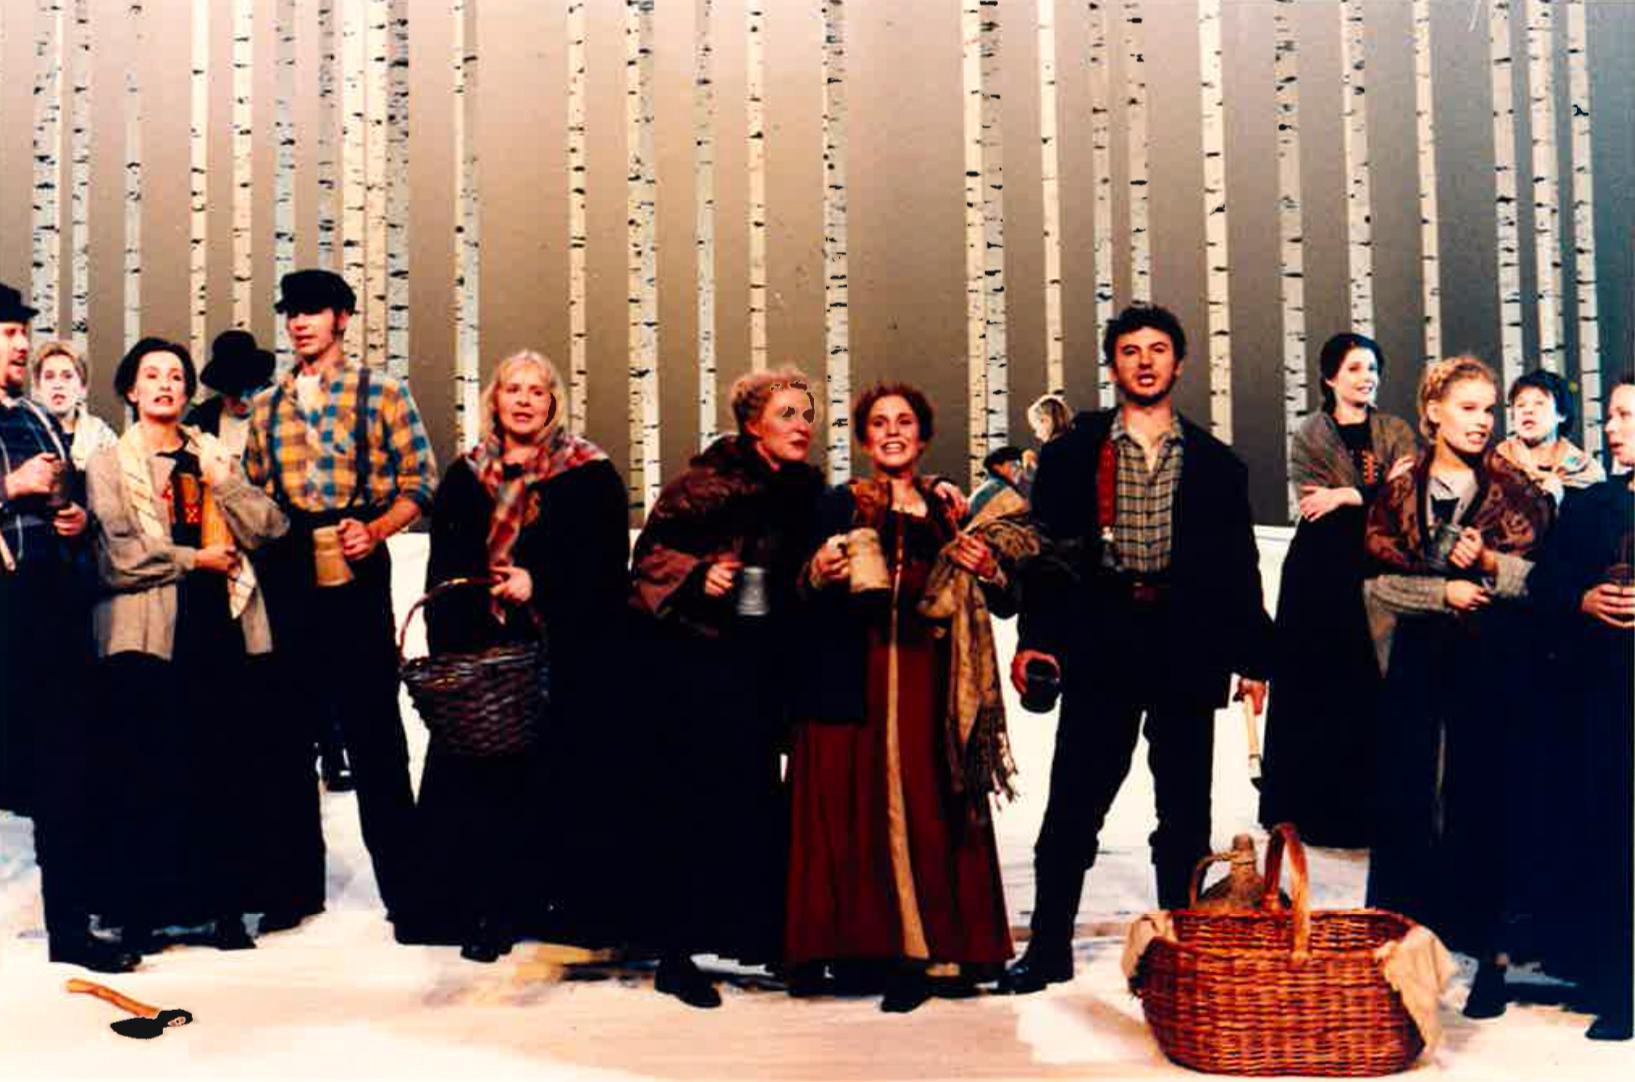 Ensemblen på scen. I mitten syns bland annat Harriet Cronström, Åsa Bergh, Helen Sjöholm och Anders Ekborg.